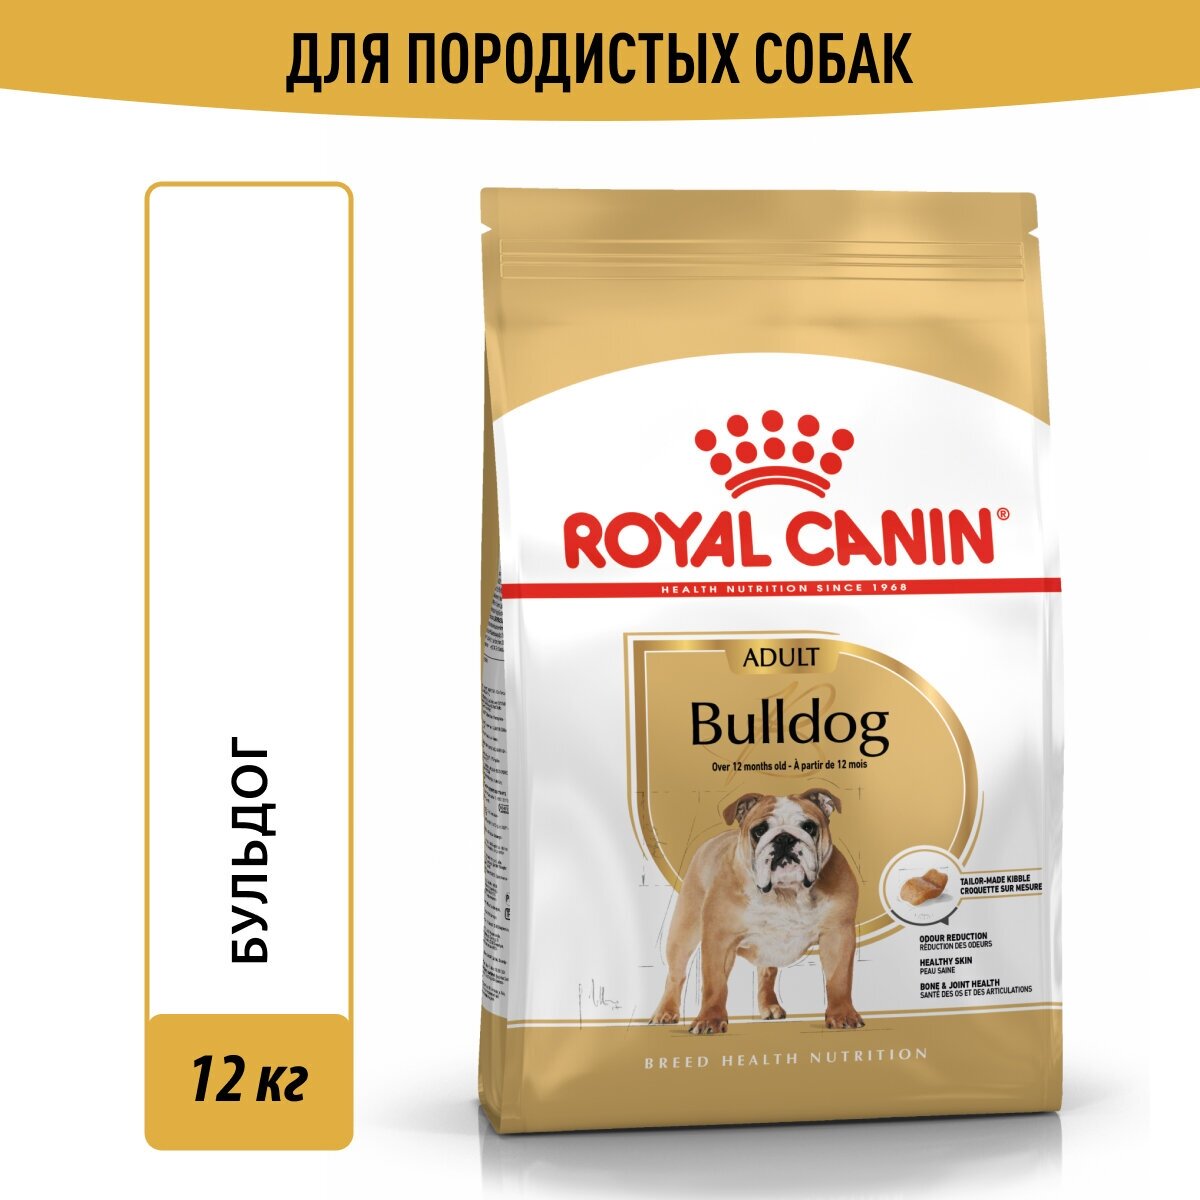 Сухой корм Royal Canin Bulldog Adult (Французский Будьдог Эдалт) для взрослых собак породы бульдог от 1 года до 10 лет, 12 кг